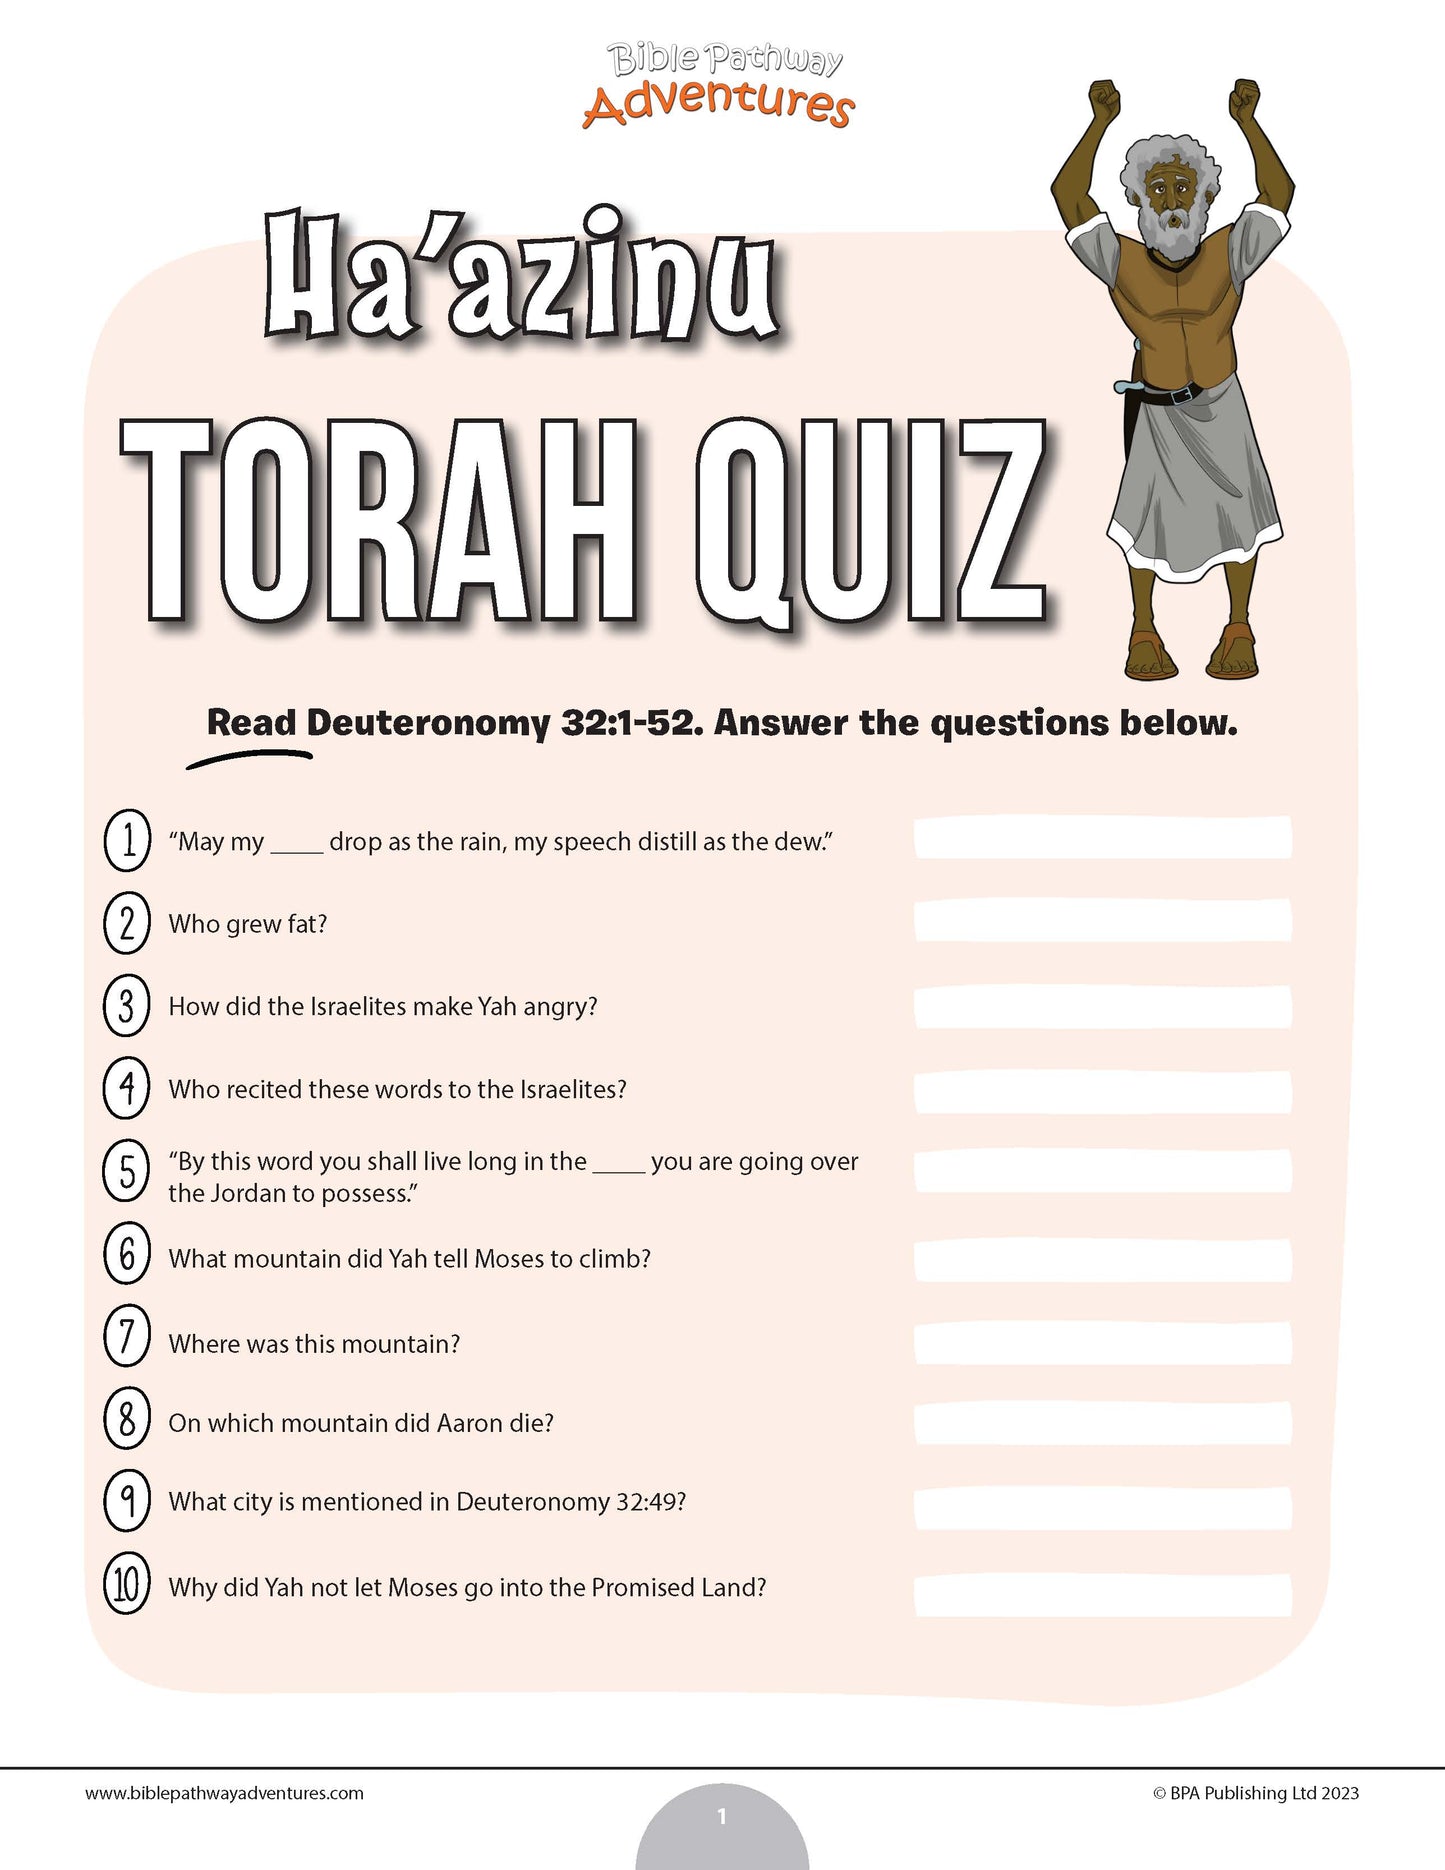 Ha’azinu Torah quiz